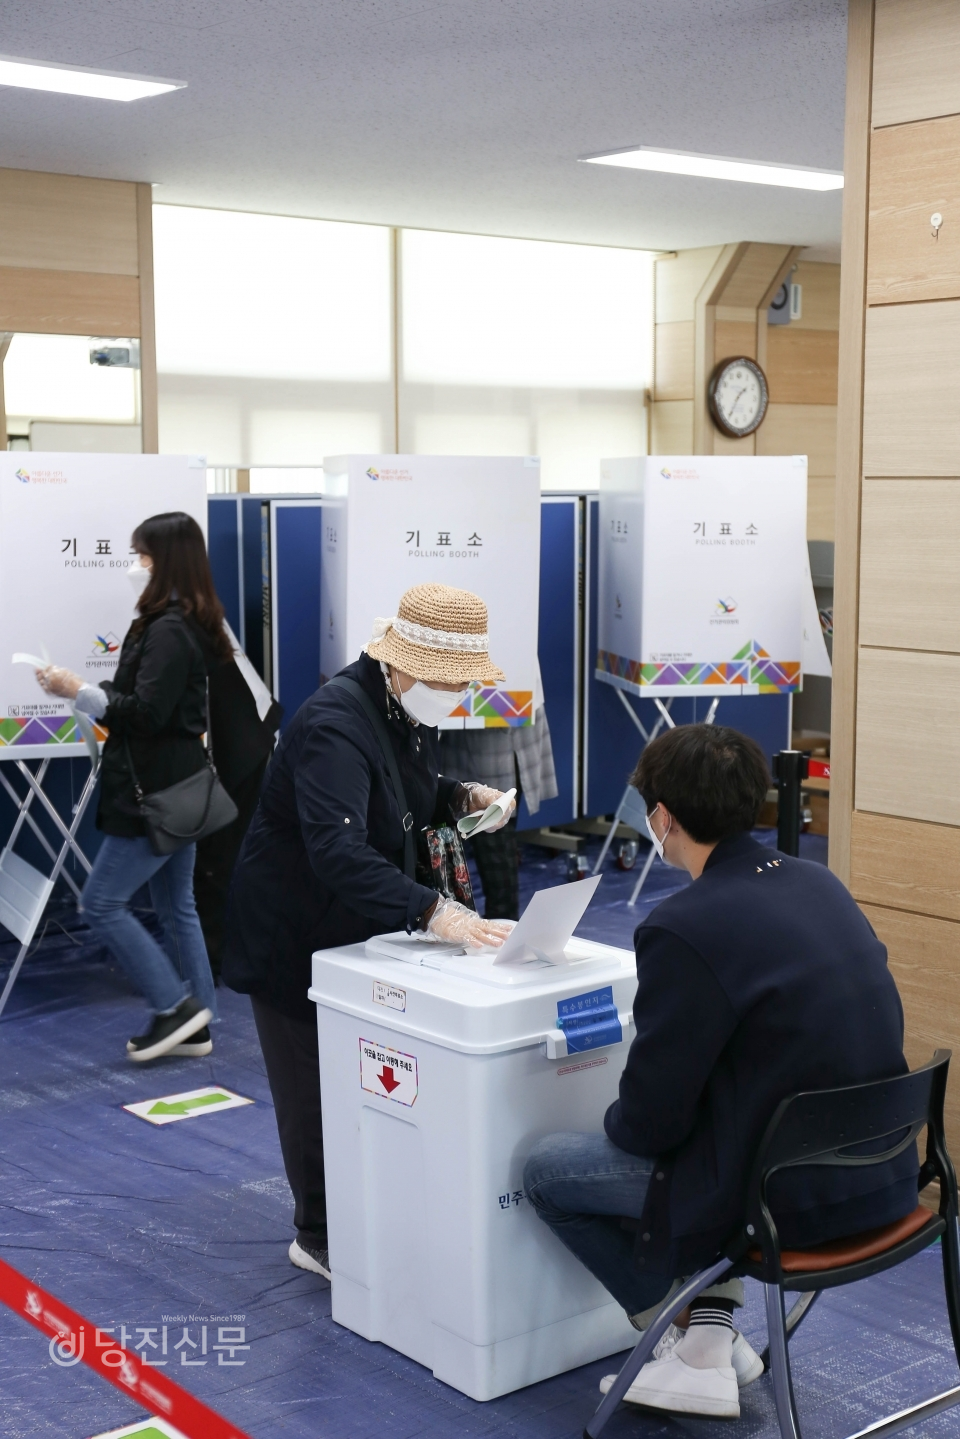 10일 사전투표소에서 투표하는 당진시민의 모습. 사전투표는 각 읍면동별 지정장소에서 10일~11일 진행됐다.